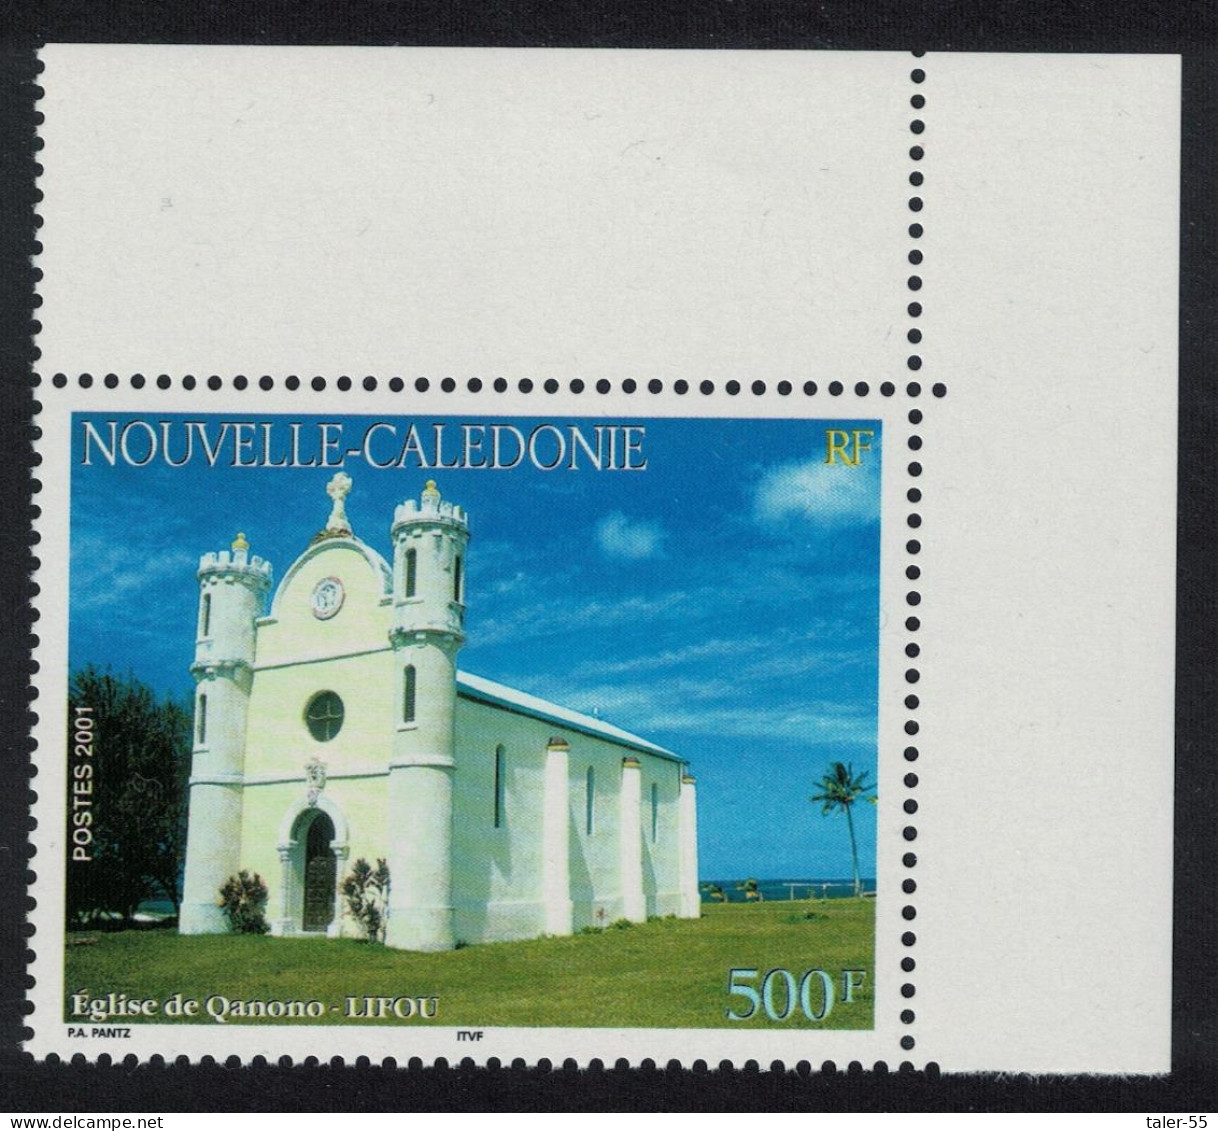 New Caledonia Qanono Church Lifou 500f NE Corner 2001 MNH SG#1241 MI#1247 - Neufs